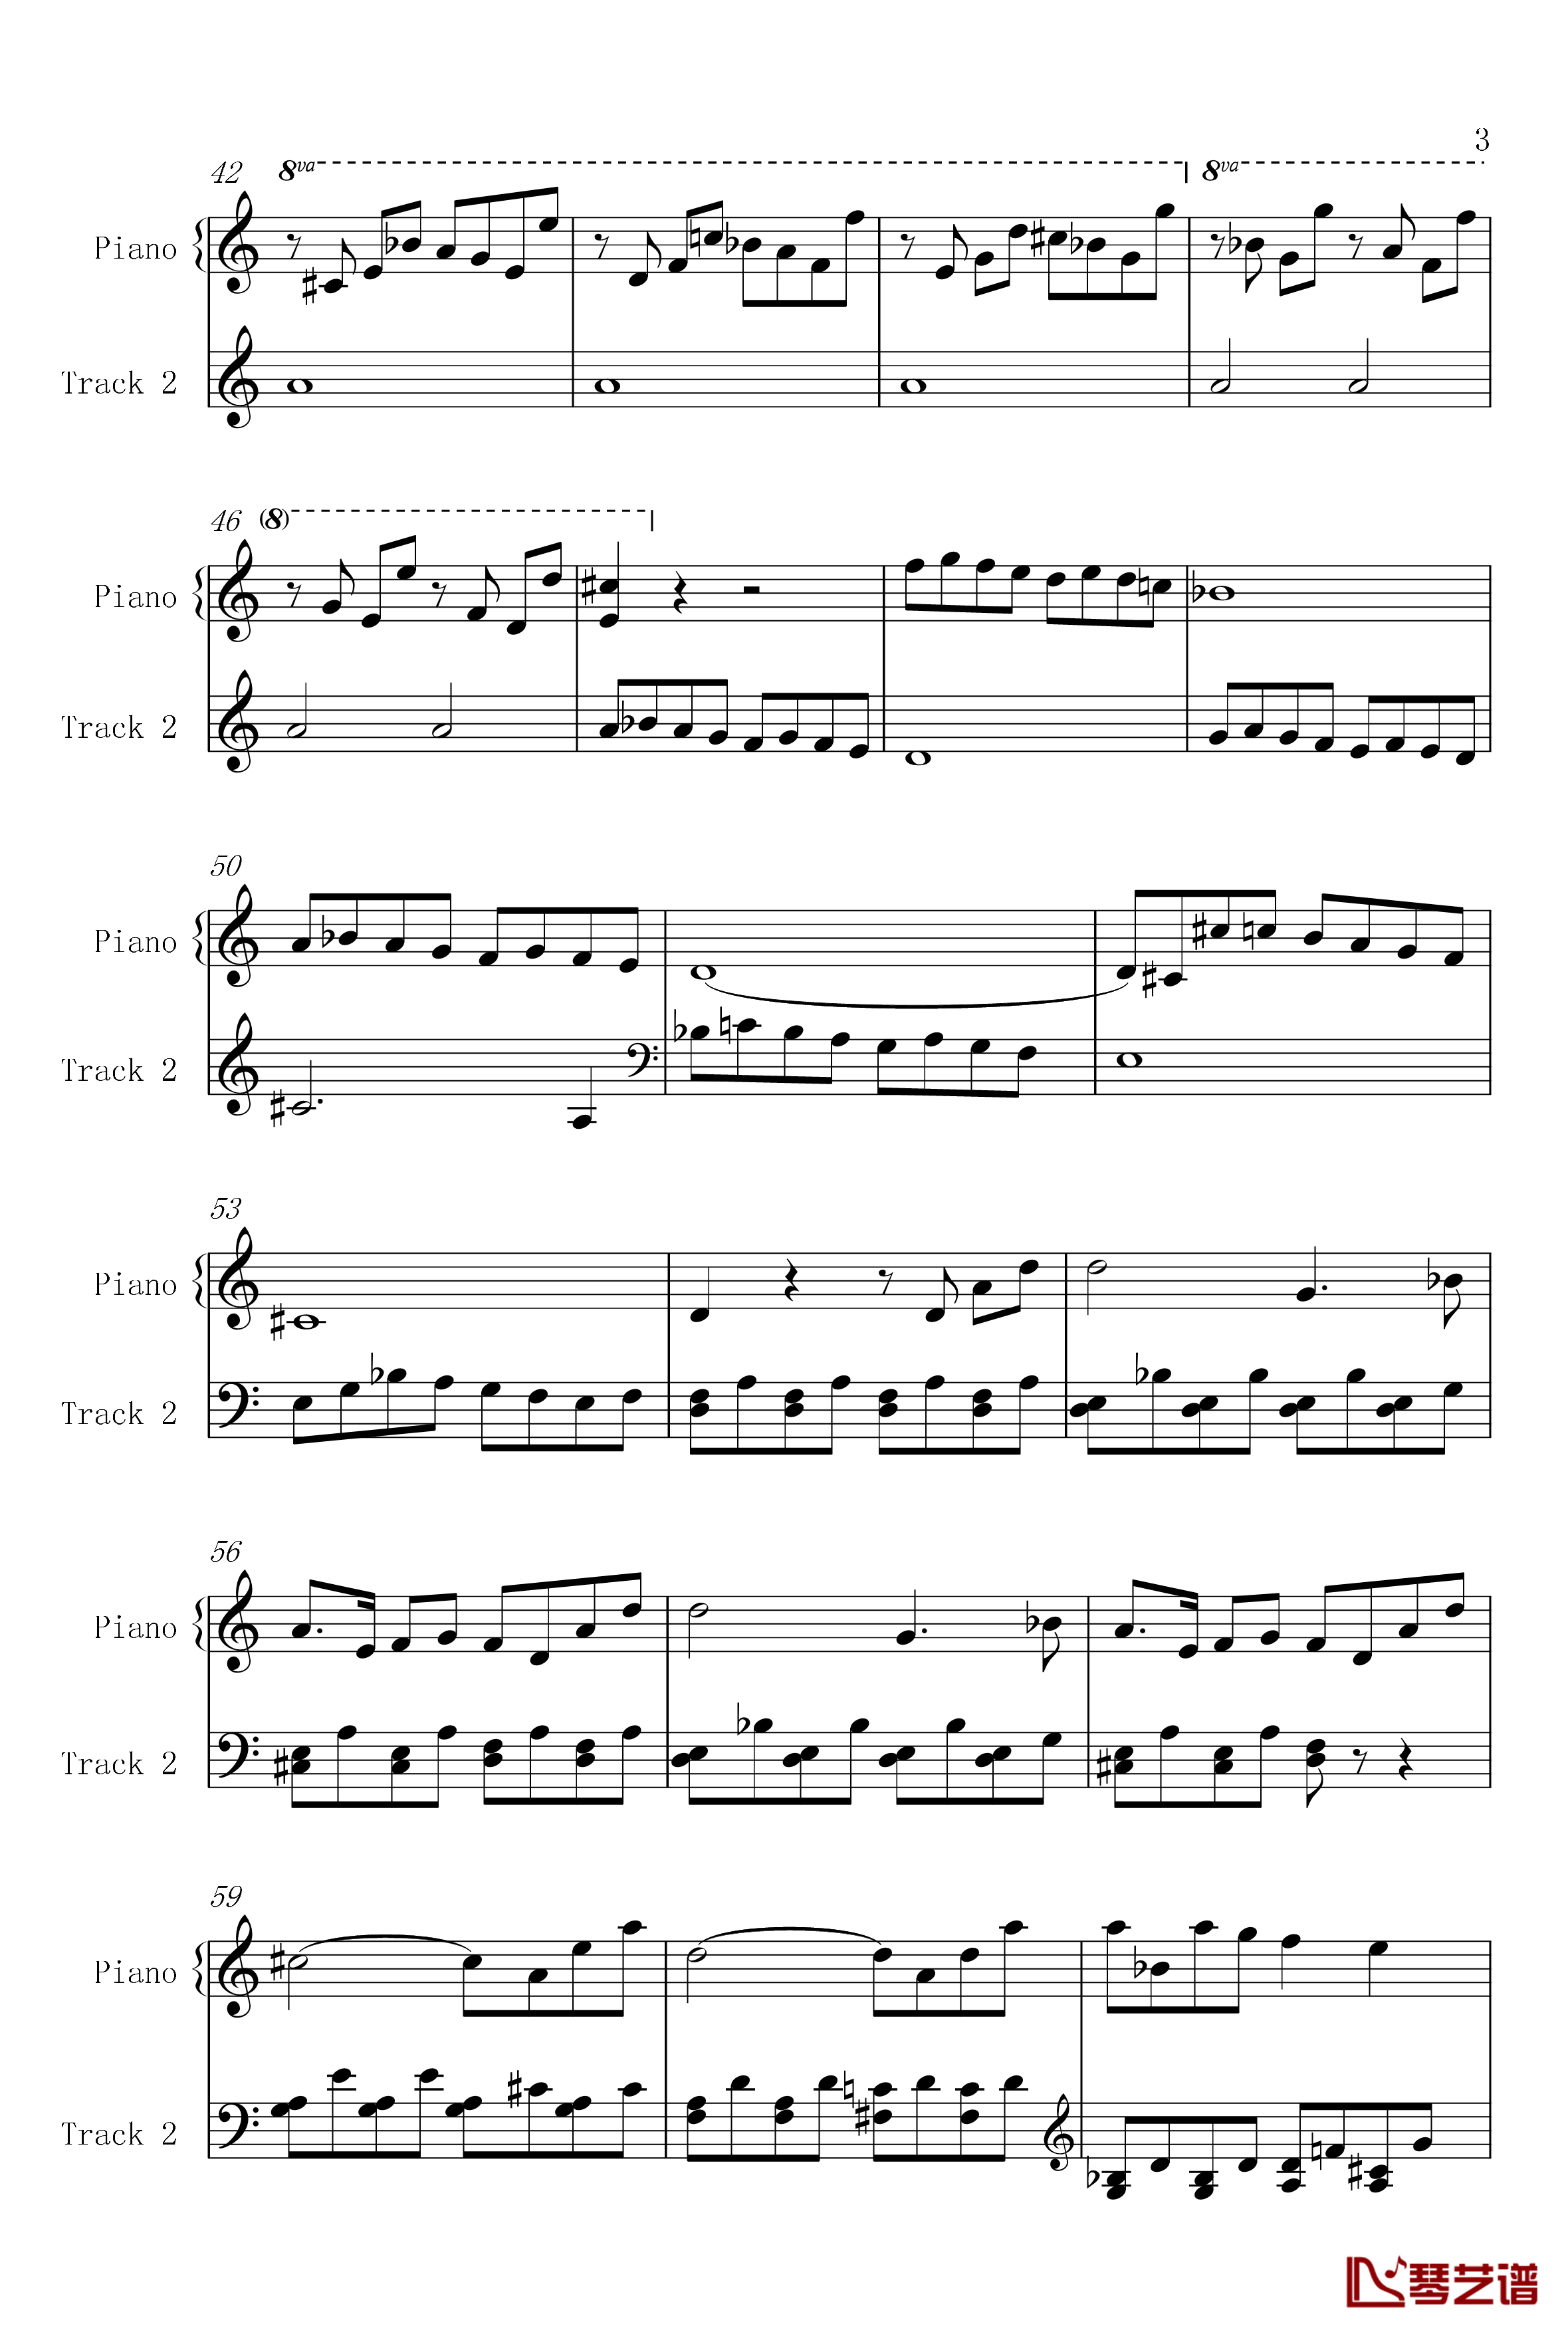 菲比赫小奏鸣曲钢琴谱-第一、二乐章-菲比赫3